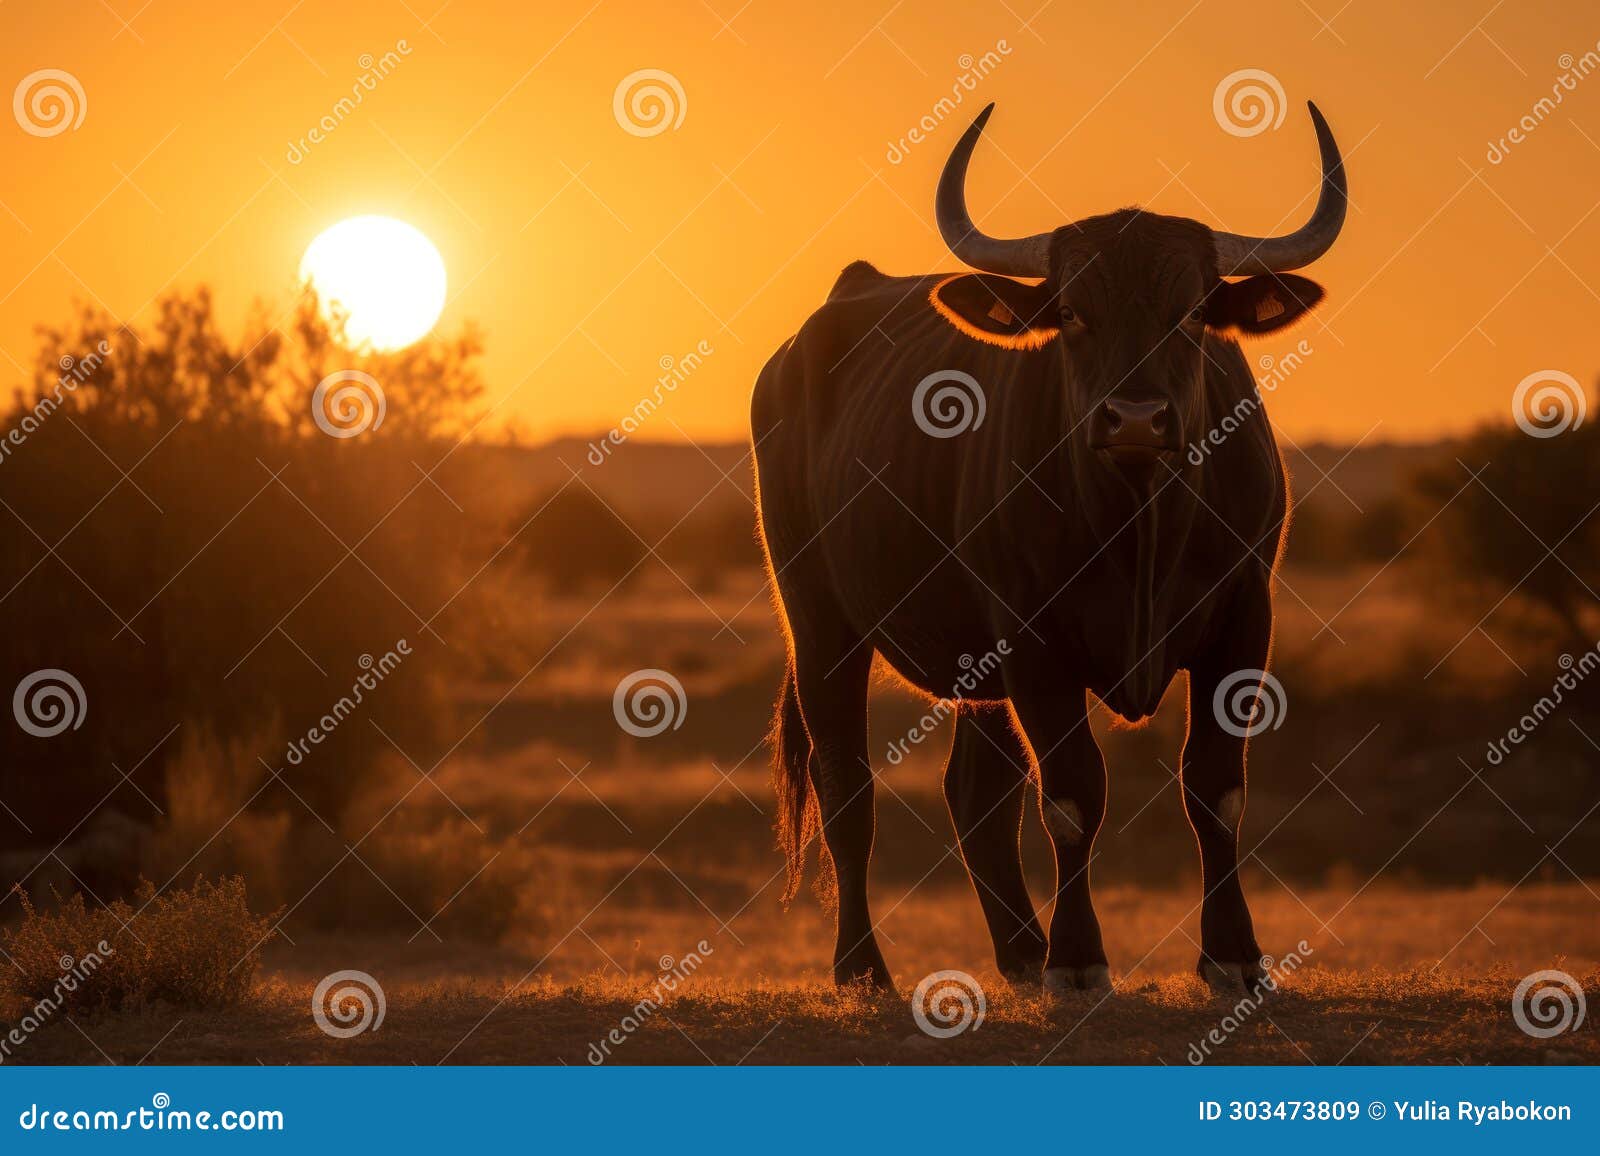 spanish toro bull on sunset view. generate ai